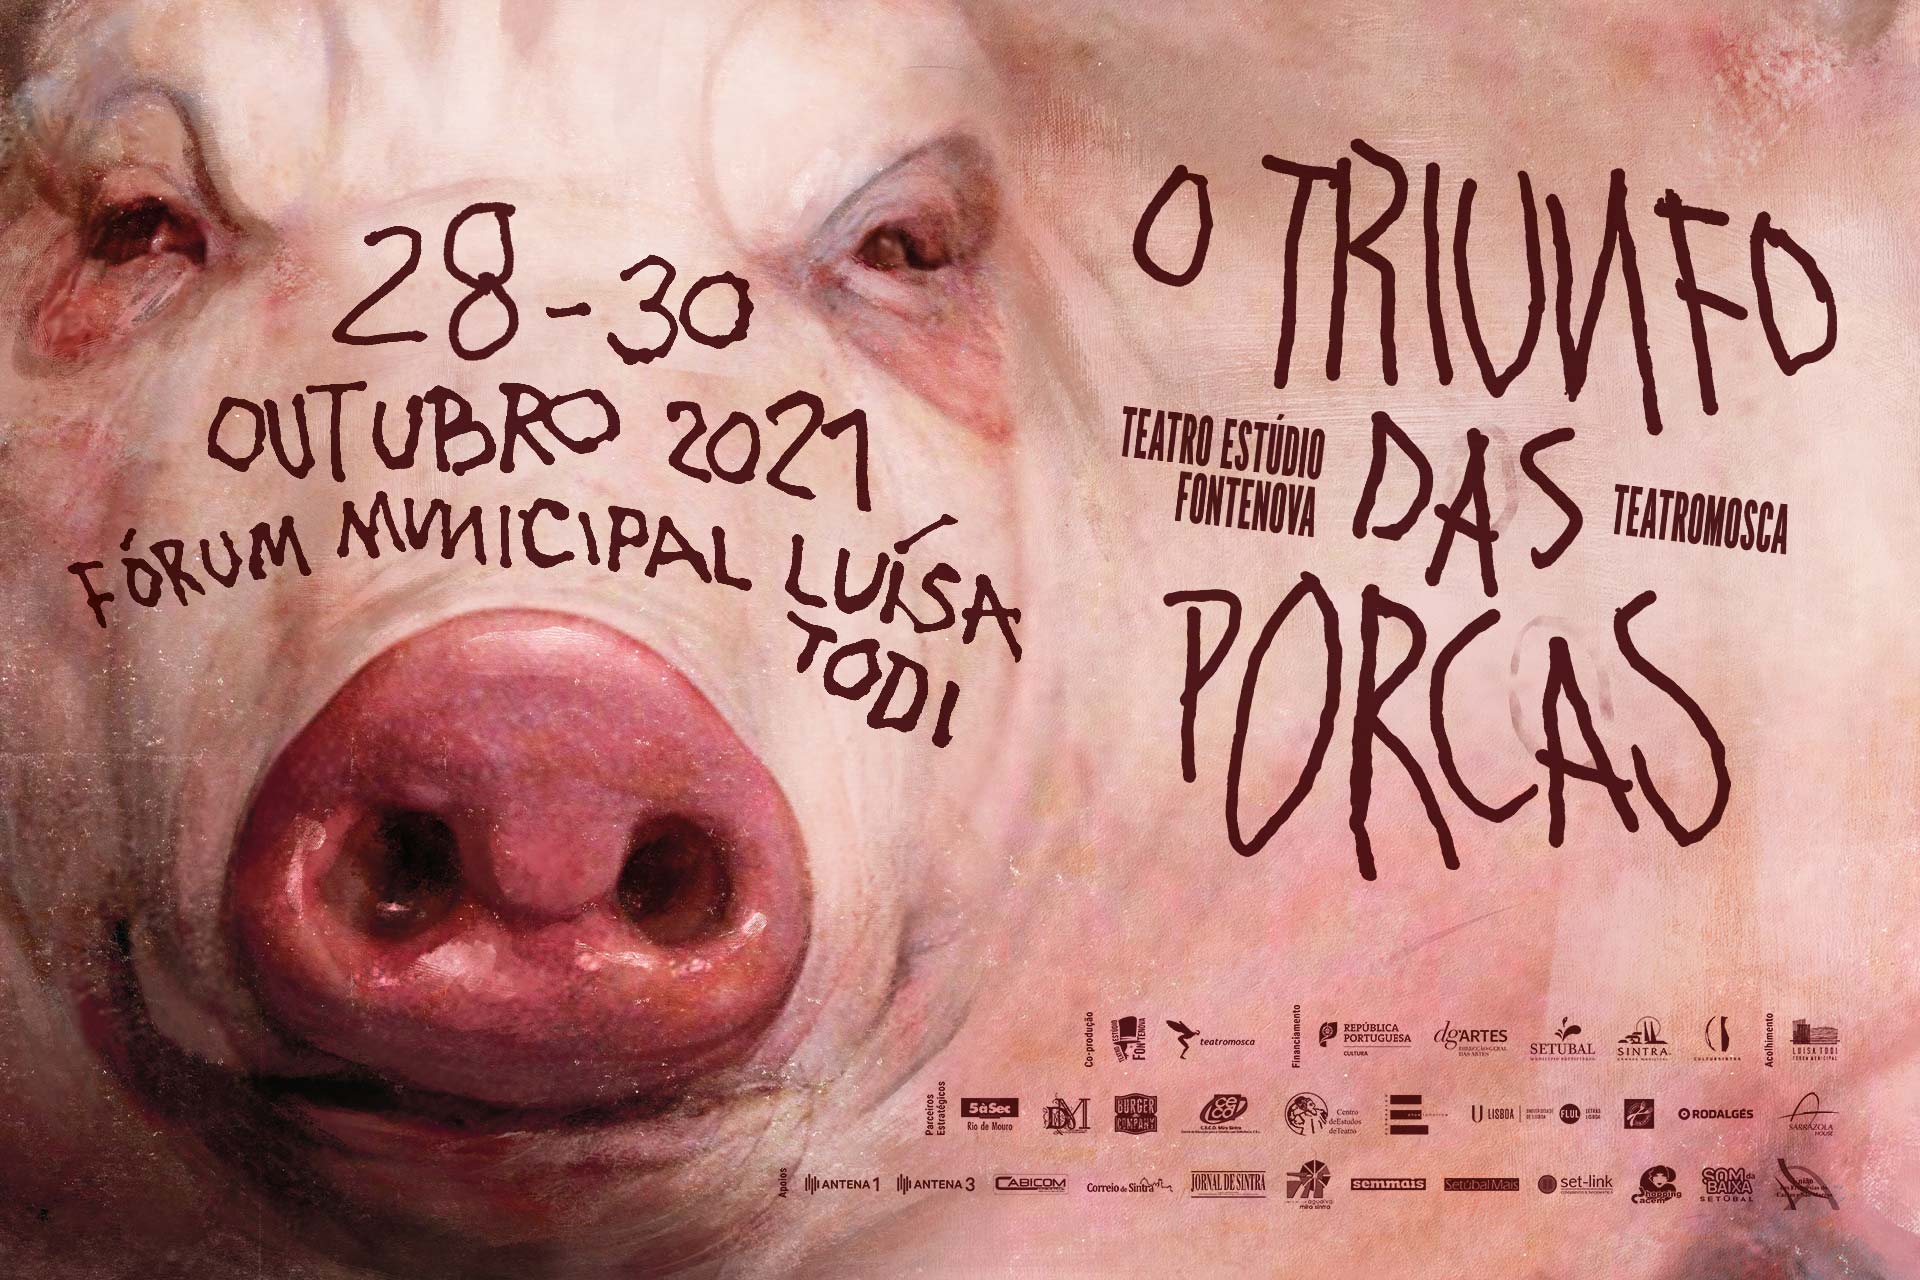 O Triunfo das Porcas // TEF e teatromosca